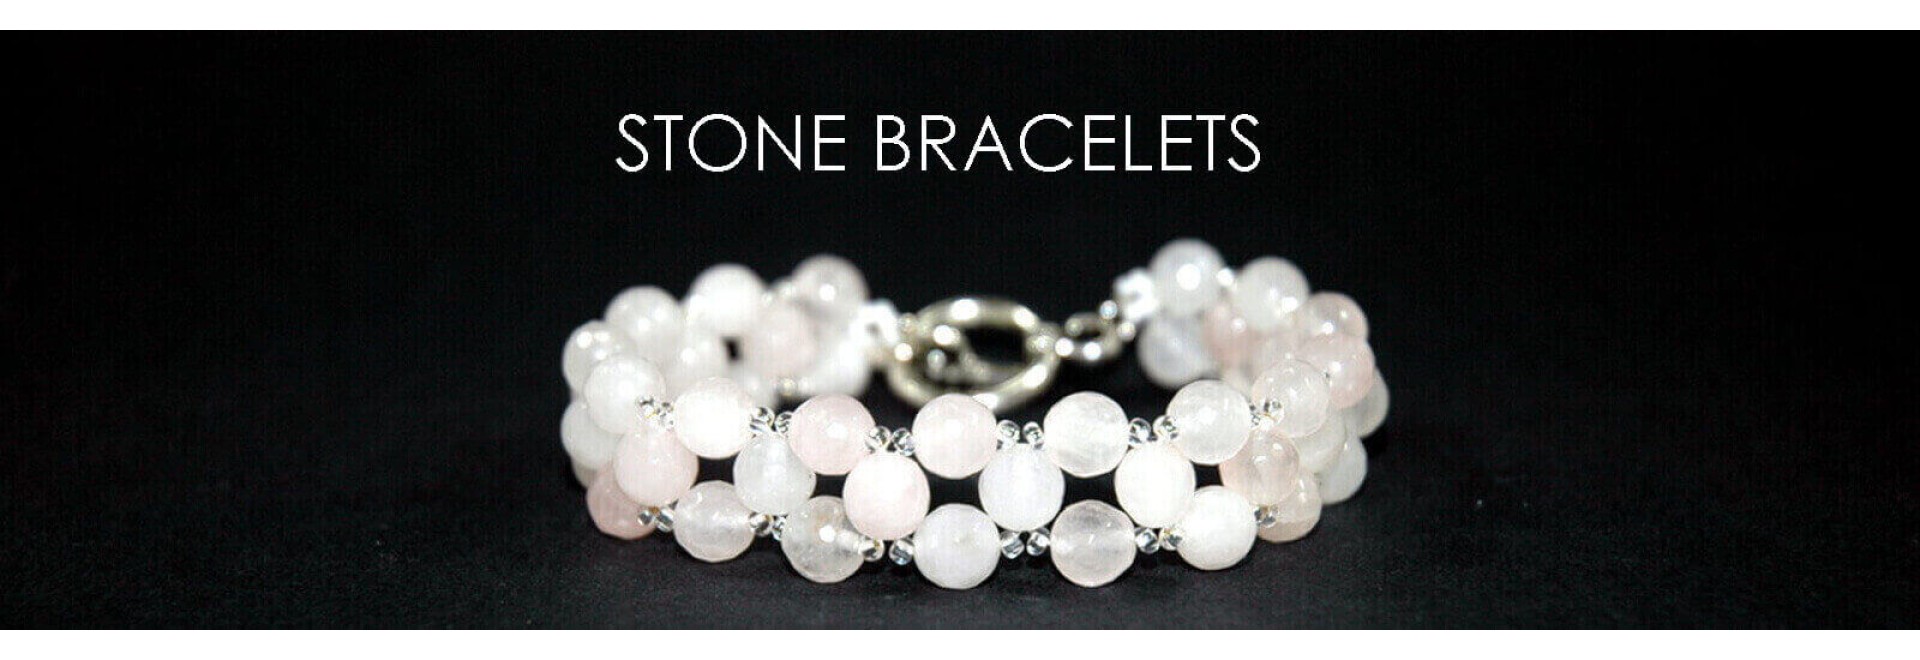 Stone Bracelets